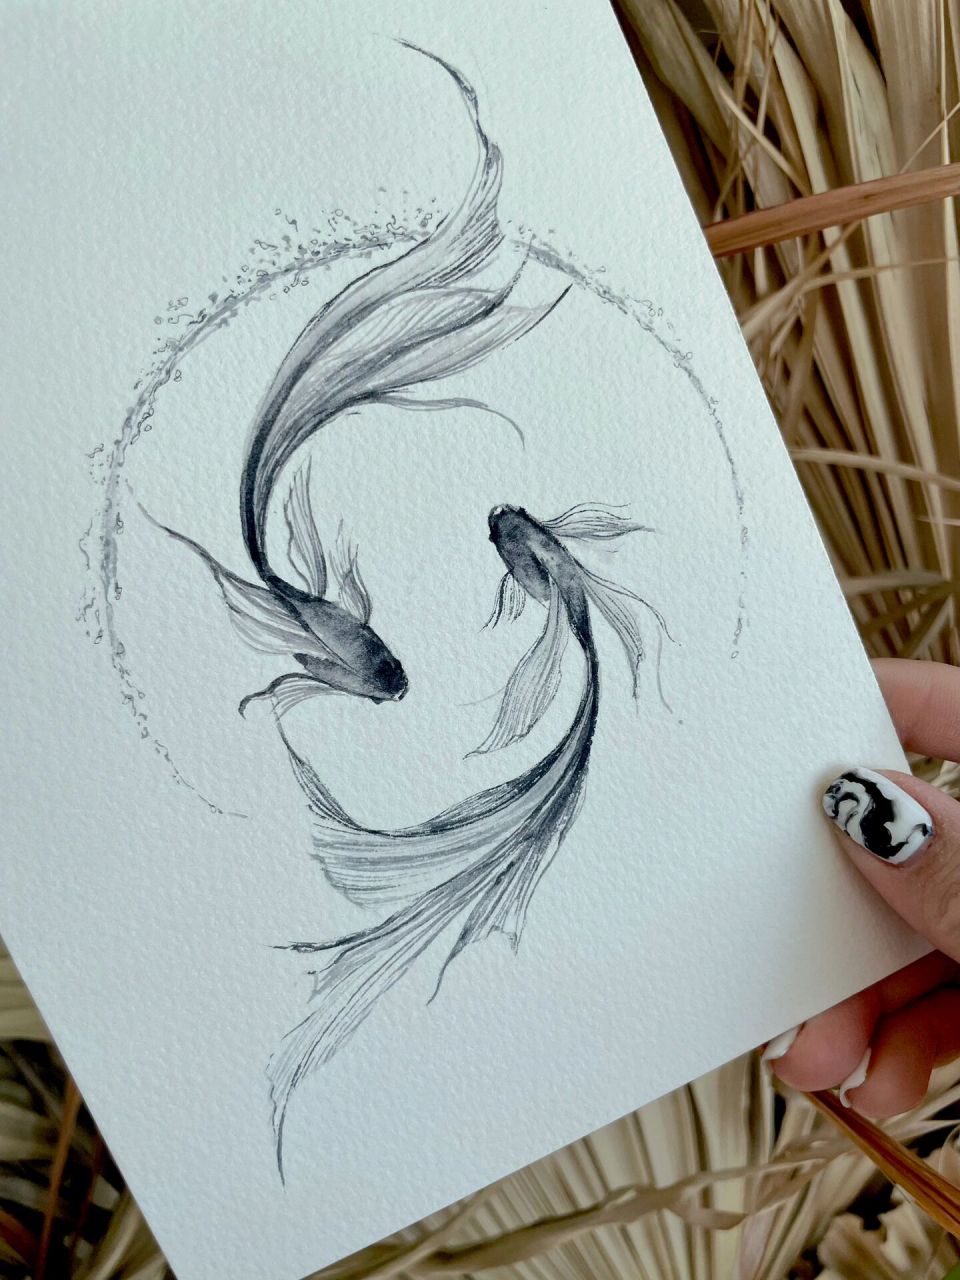 水墨鱼纹身图案手稿图片